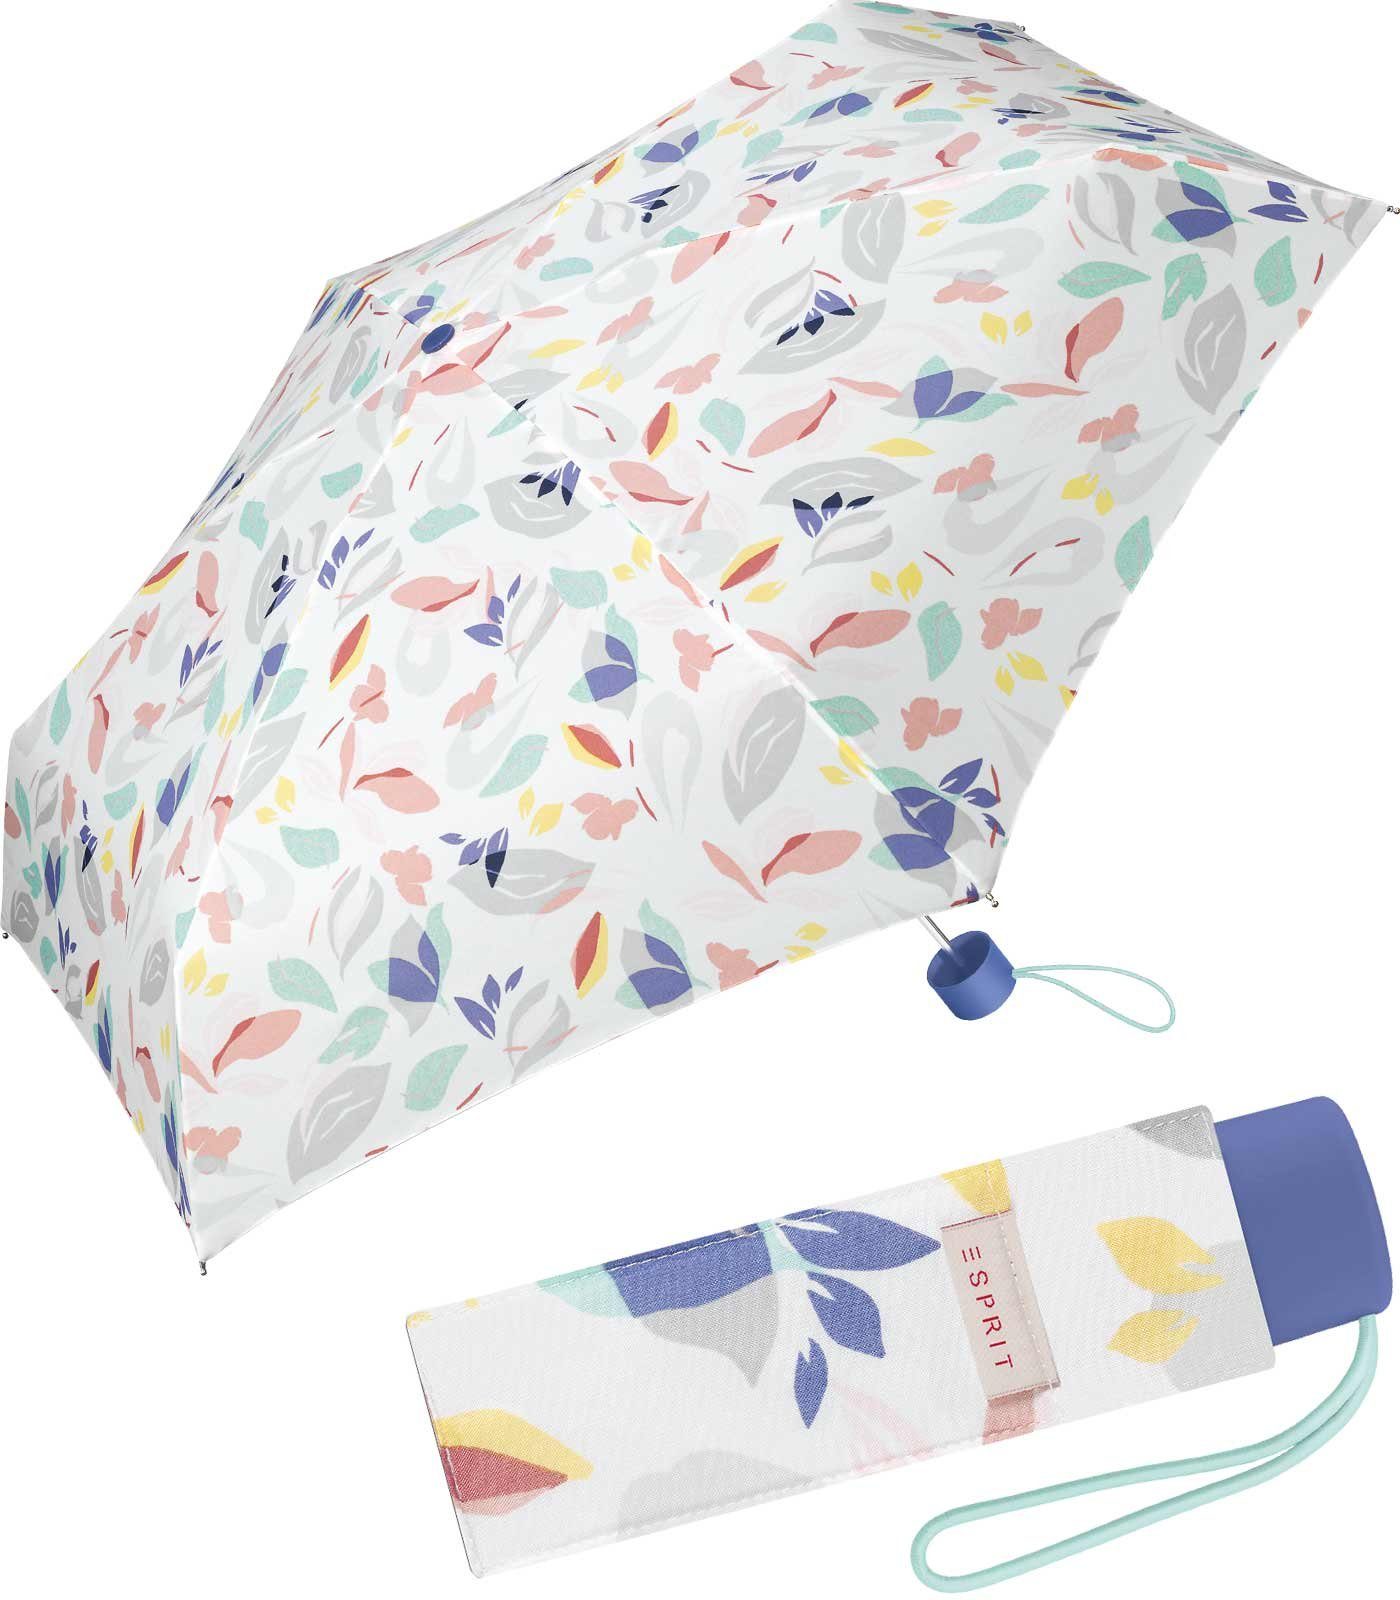 Esprit Taschenregenschirm kleiner, sanften Blätter und Blüten für Schirm handlicher Damen, Frühlingsfarben in